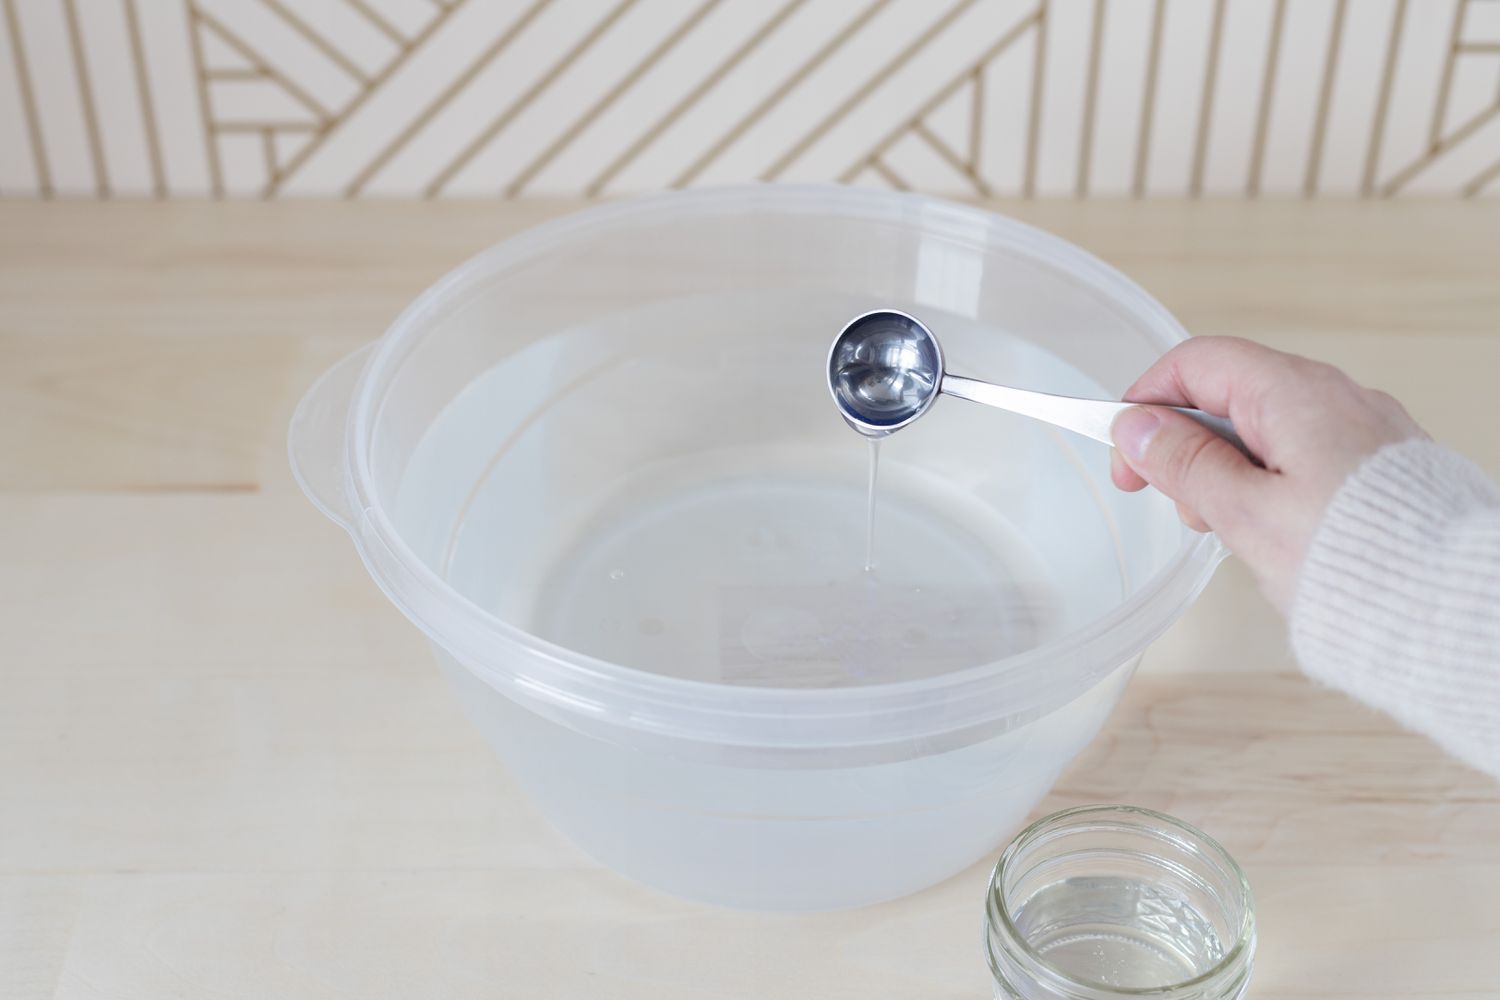 洗水液倒入大塑料碗加水混合